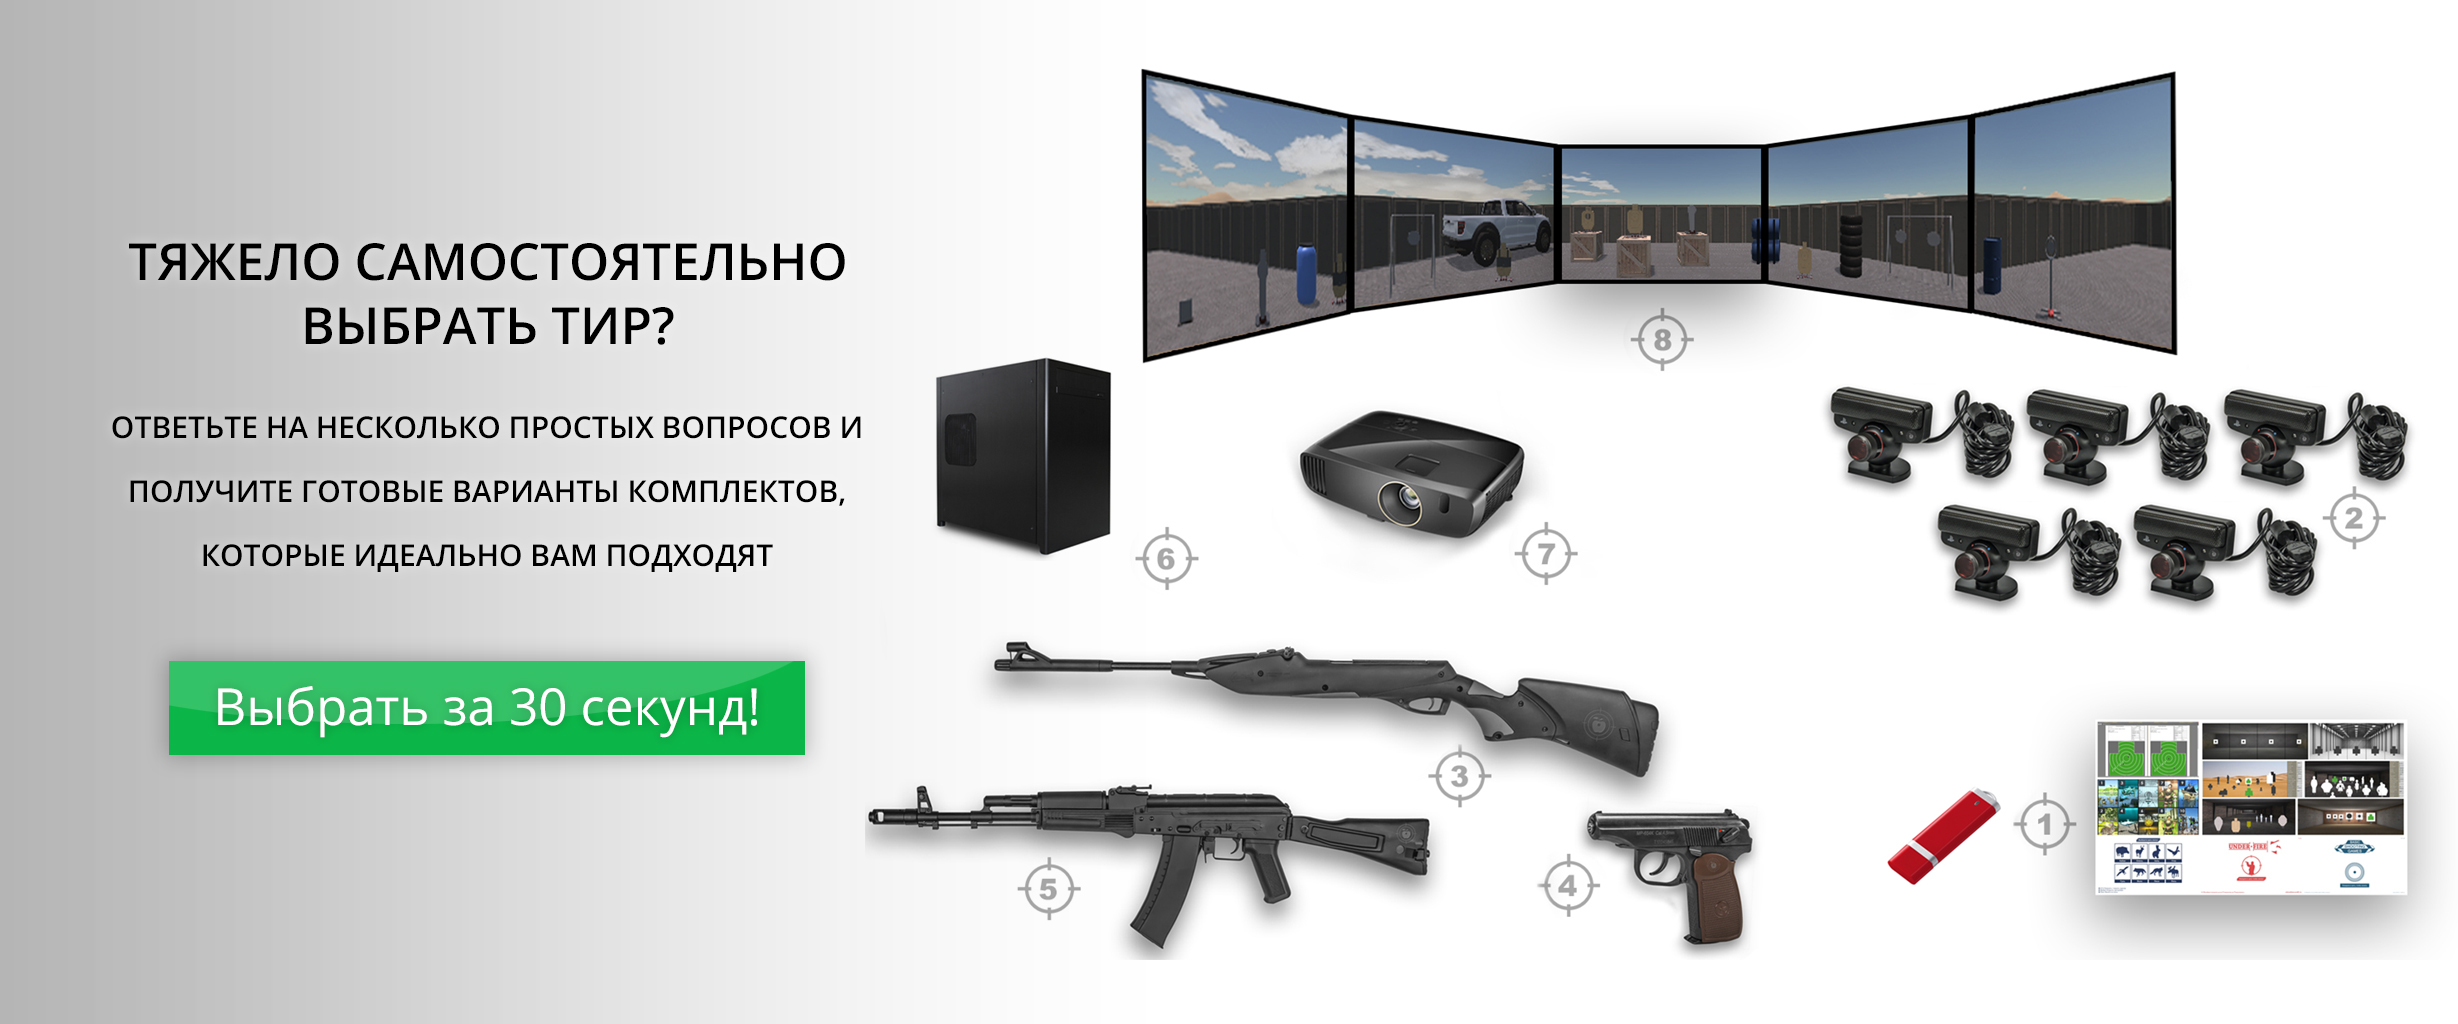 Тир купить - Стрелковый тир для бизнеса и коммерческое оборудование в Москве